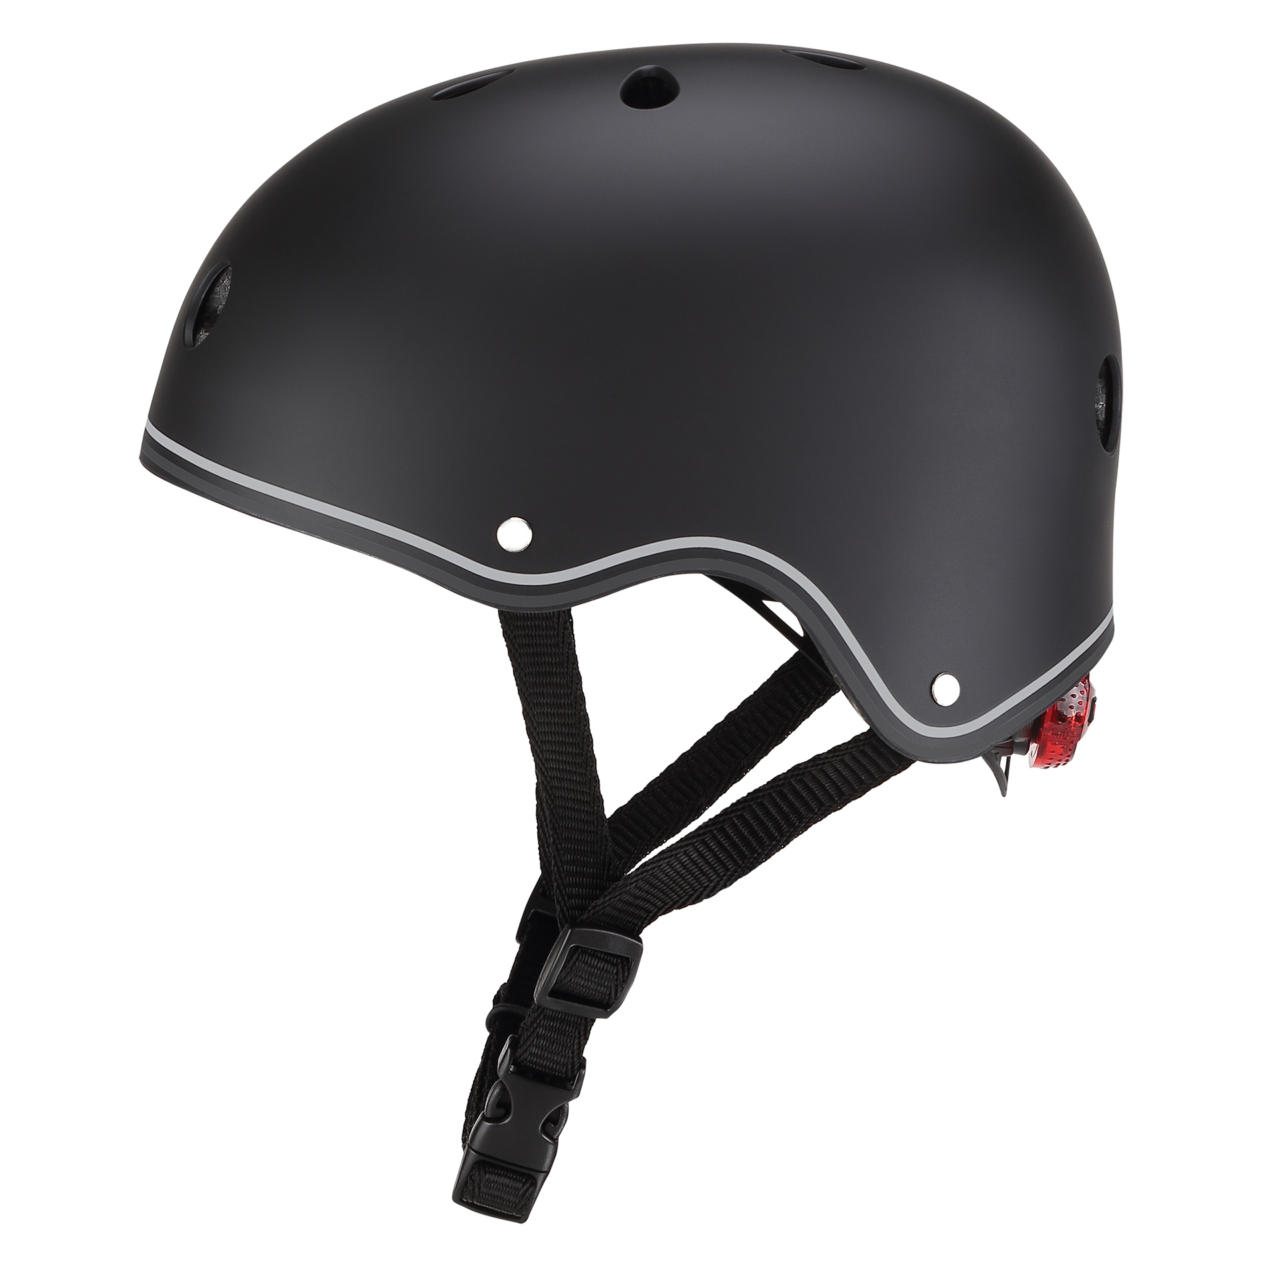 505 120 Kid Scooter Helmets With Adjustable Knob